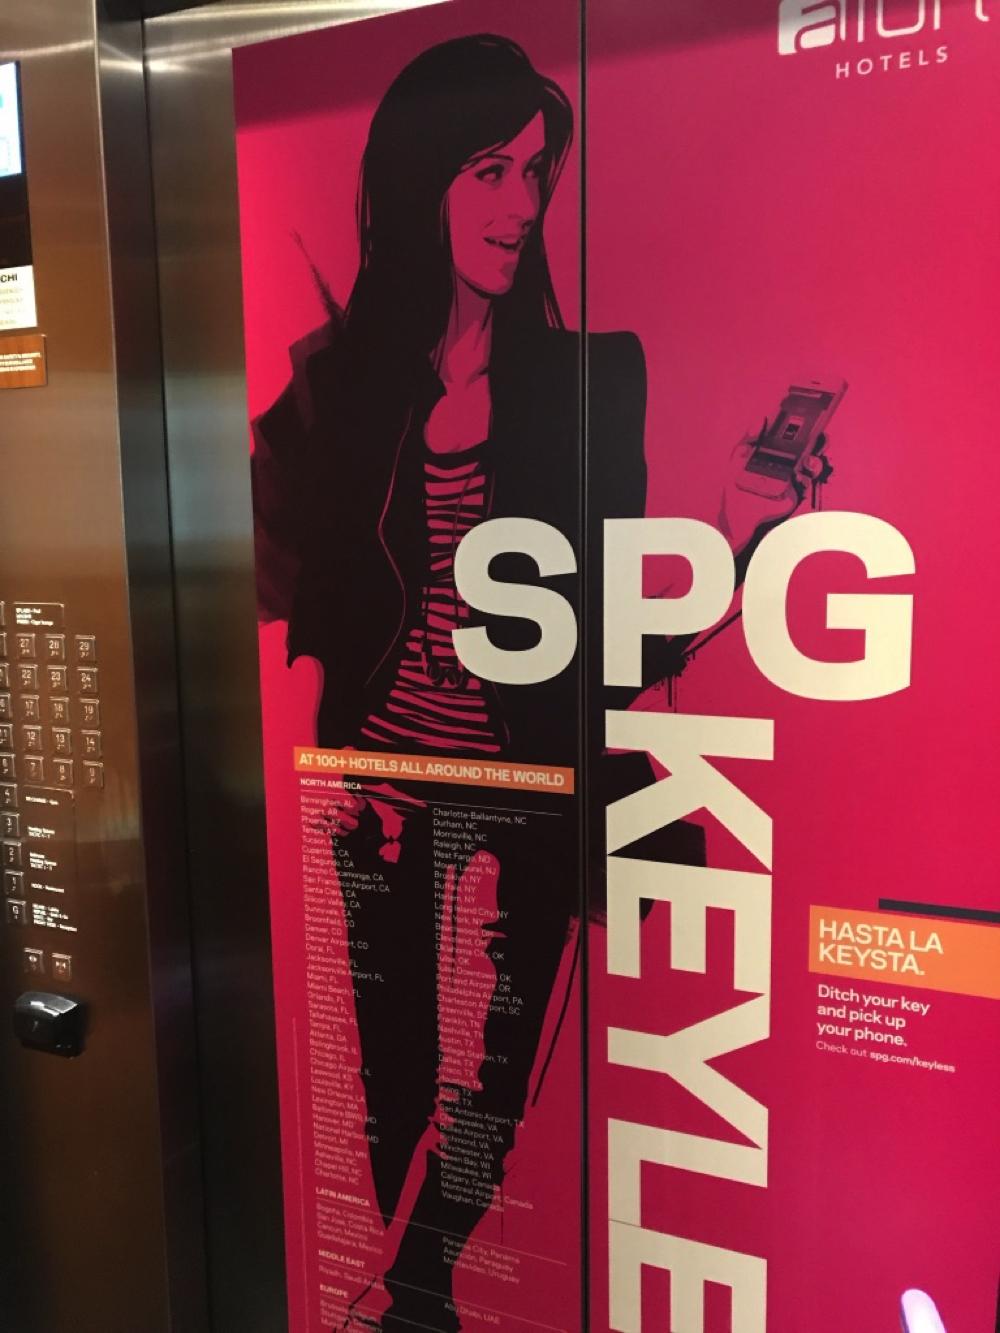 「アロフトクアラルンプールセントラル」のエレベーター内部の写真映えスポット